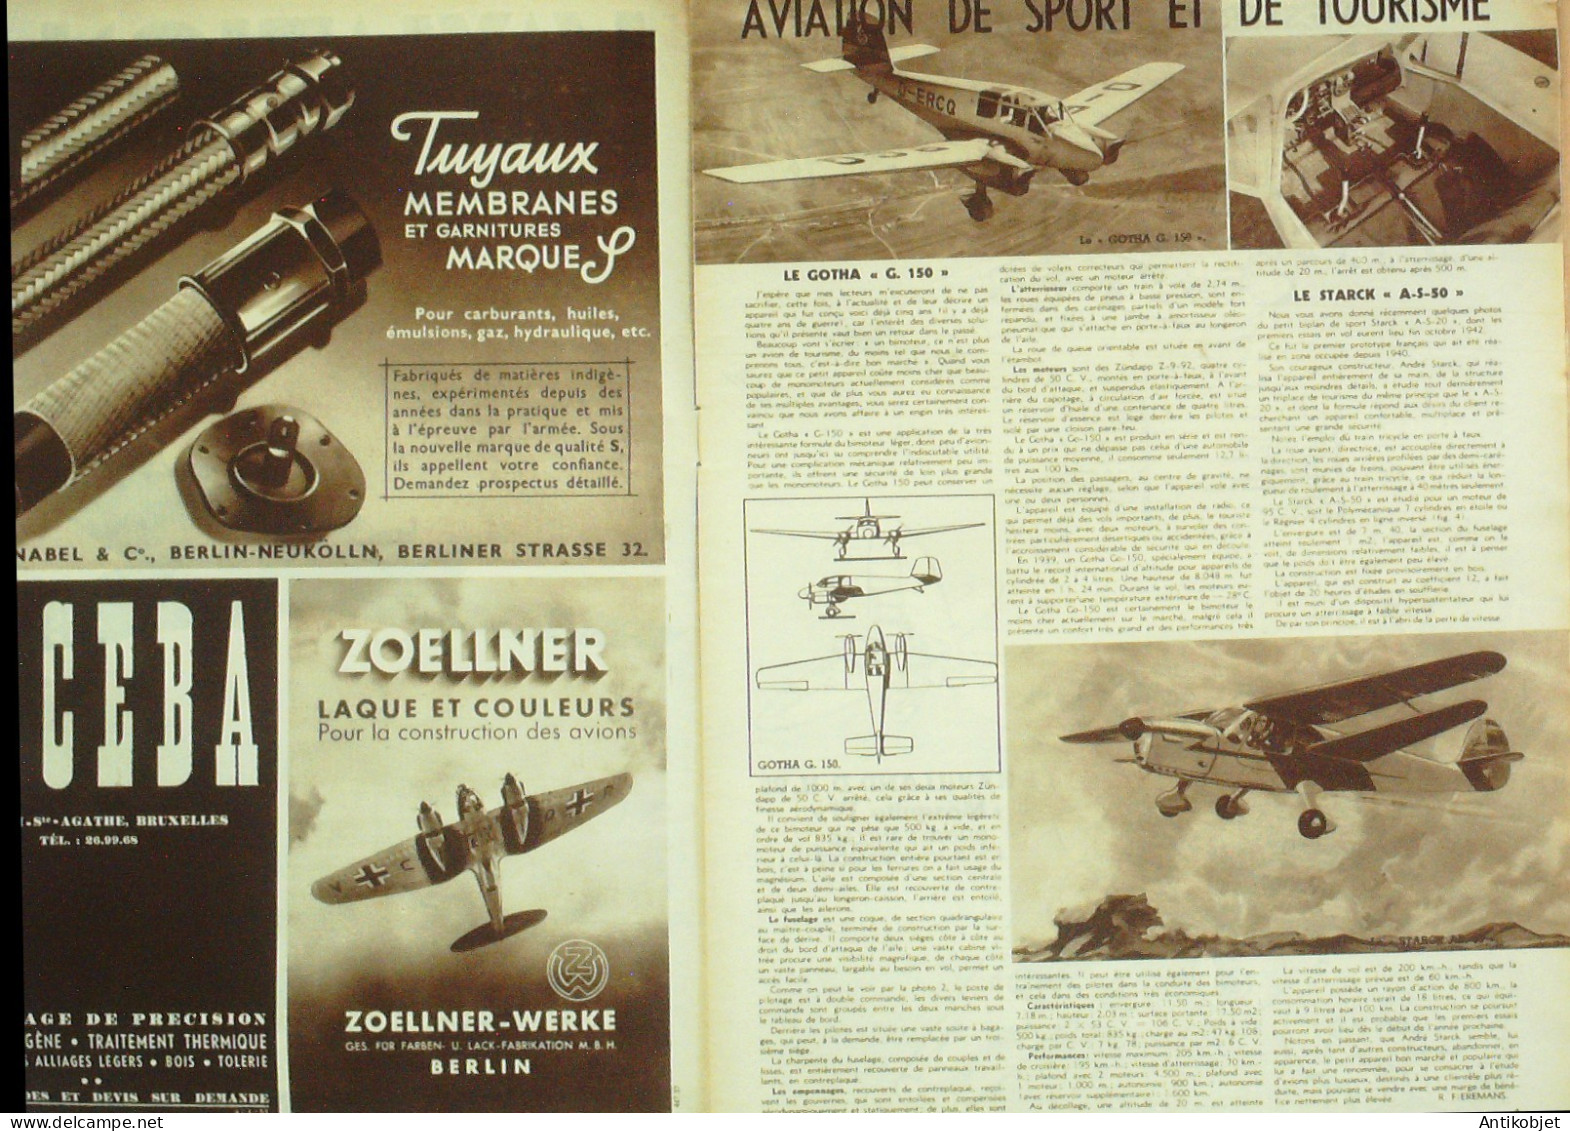 L'aviation Illustrée 1944 N° 1 Messerschmitt 323 & ME 110 Gotha G150 - Handbücher